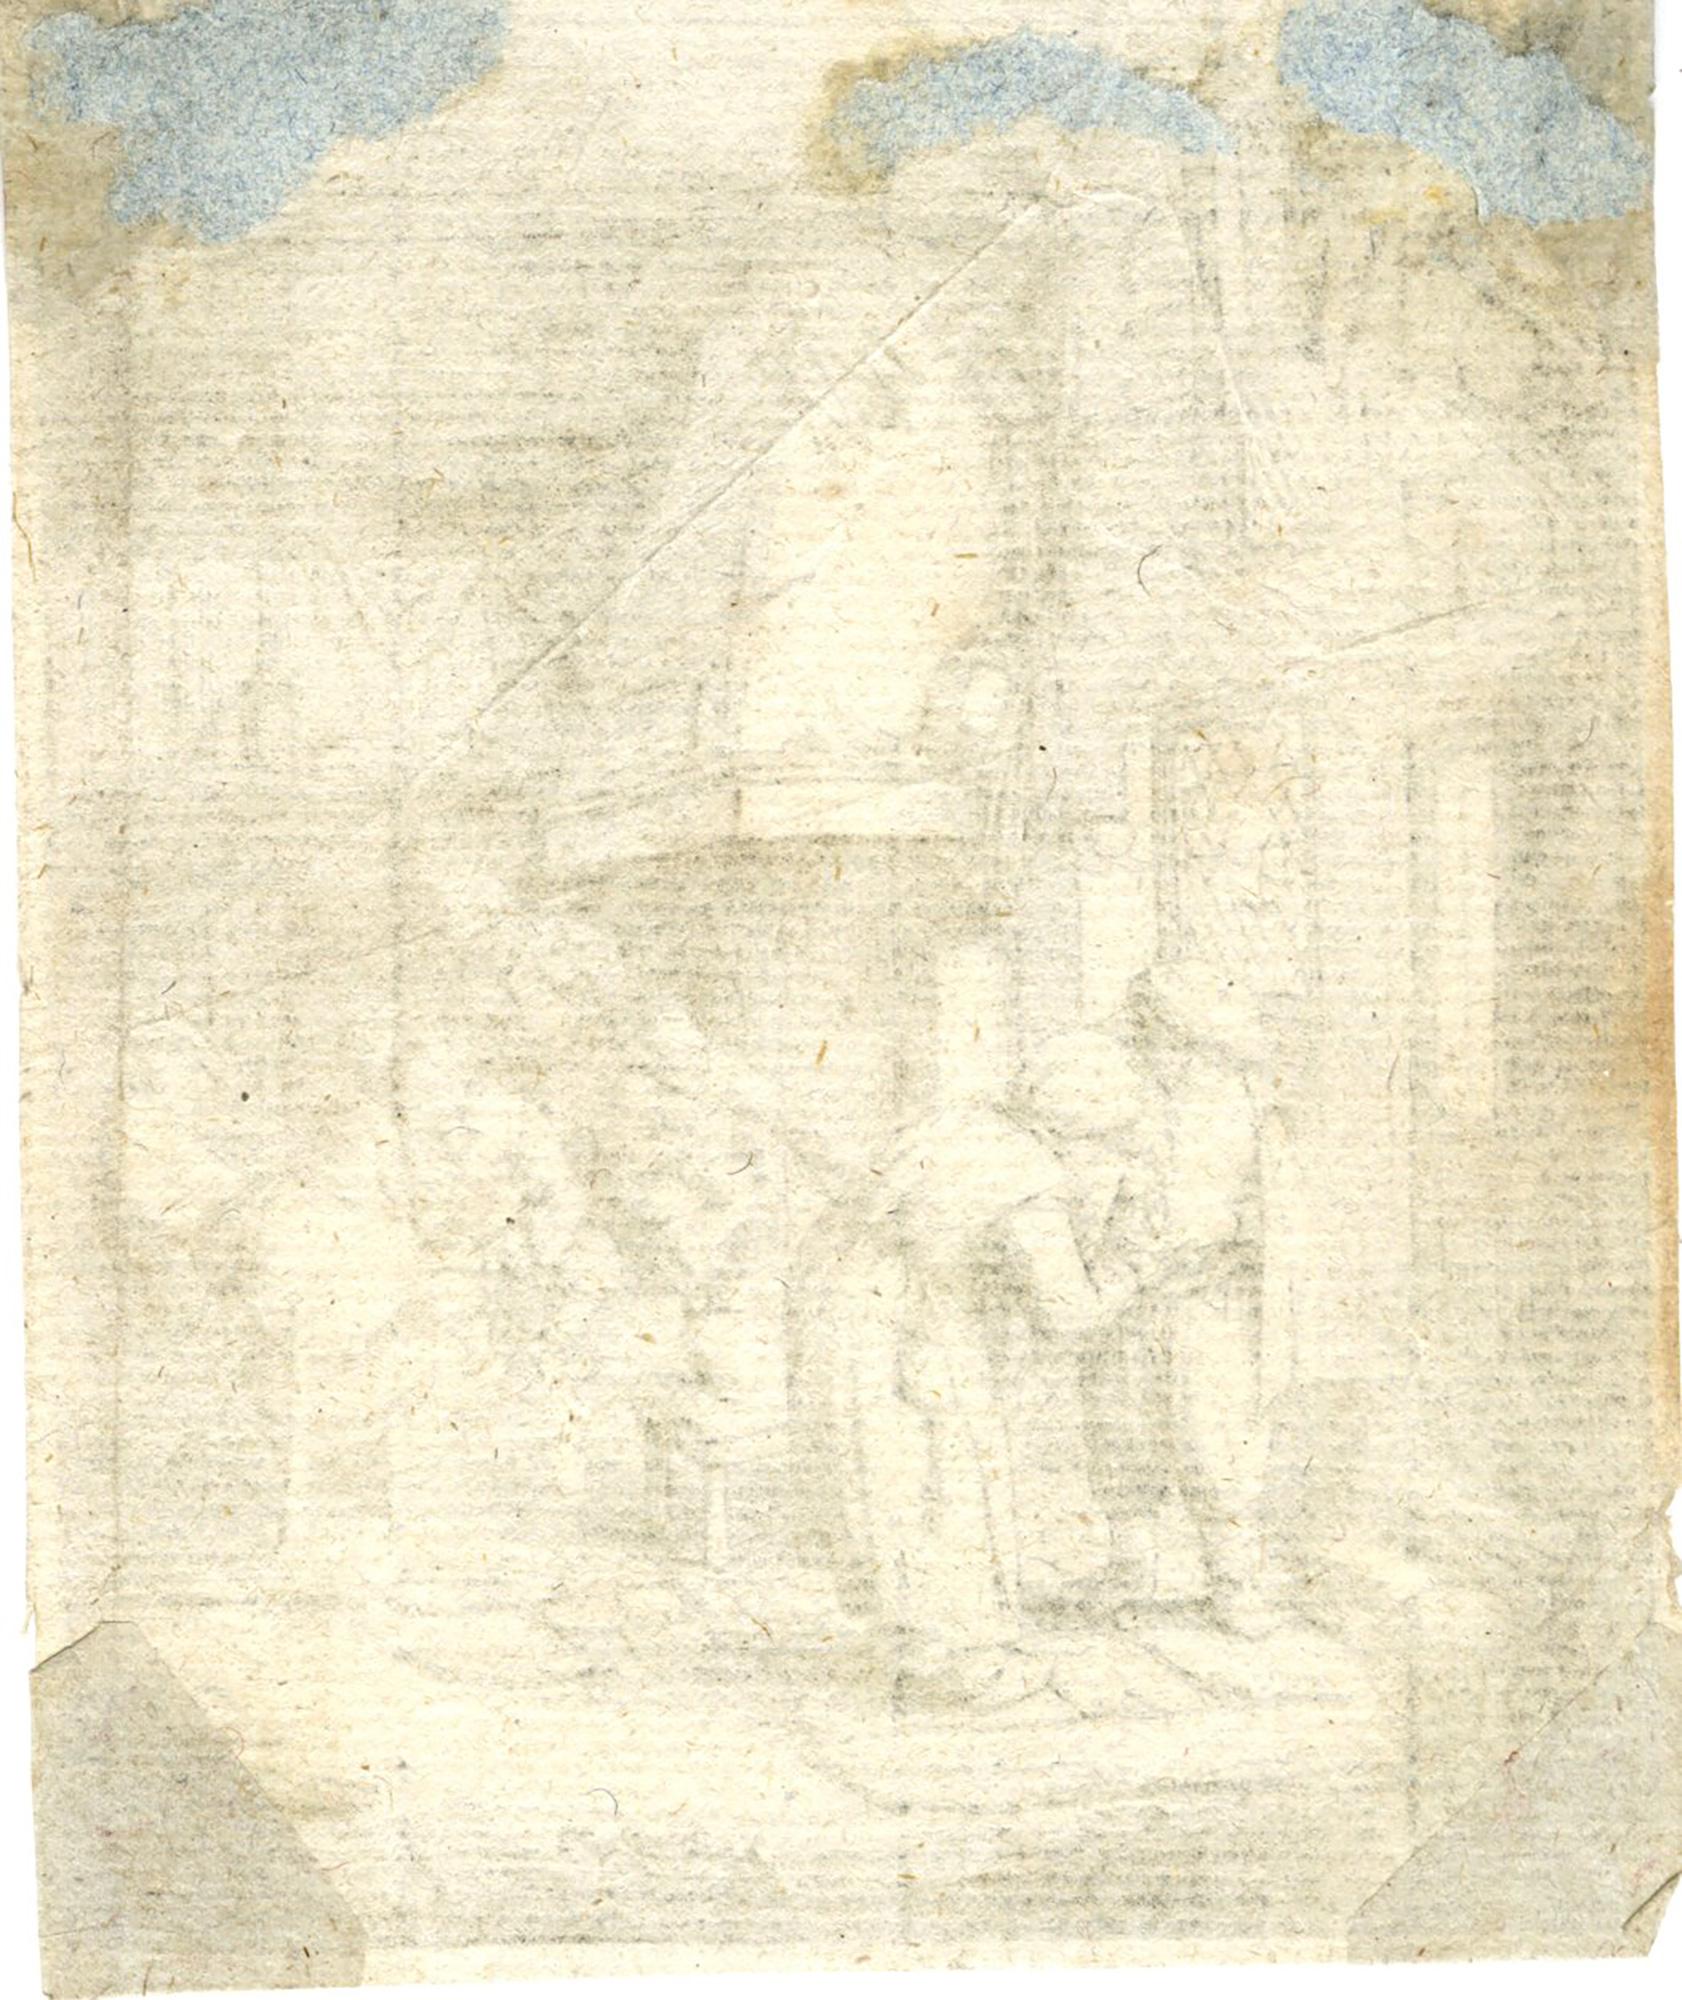 Le paysan remboursant ses dettes - Print de Adriaen van Ostade